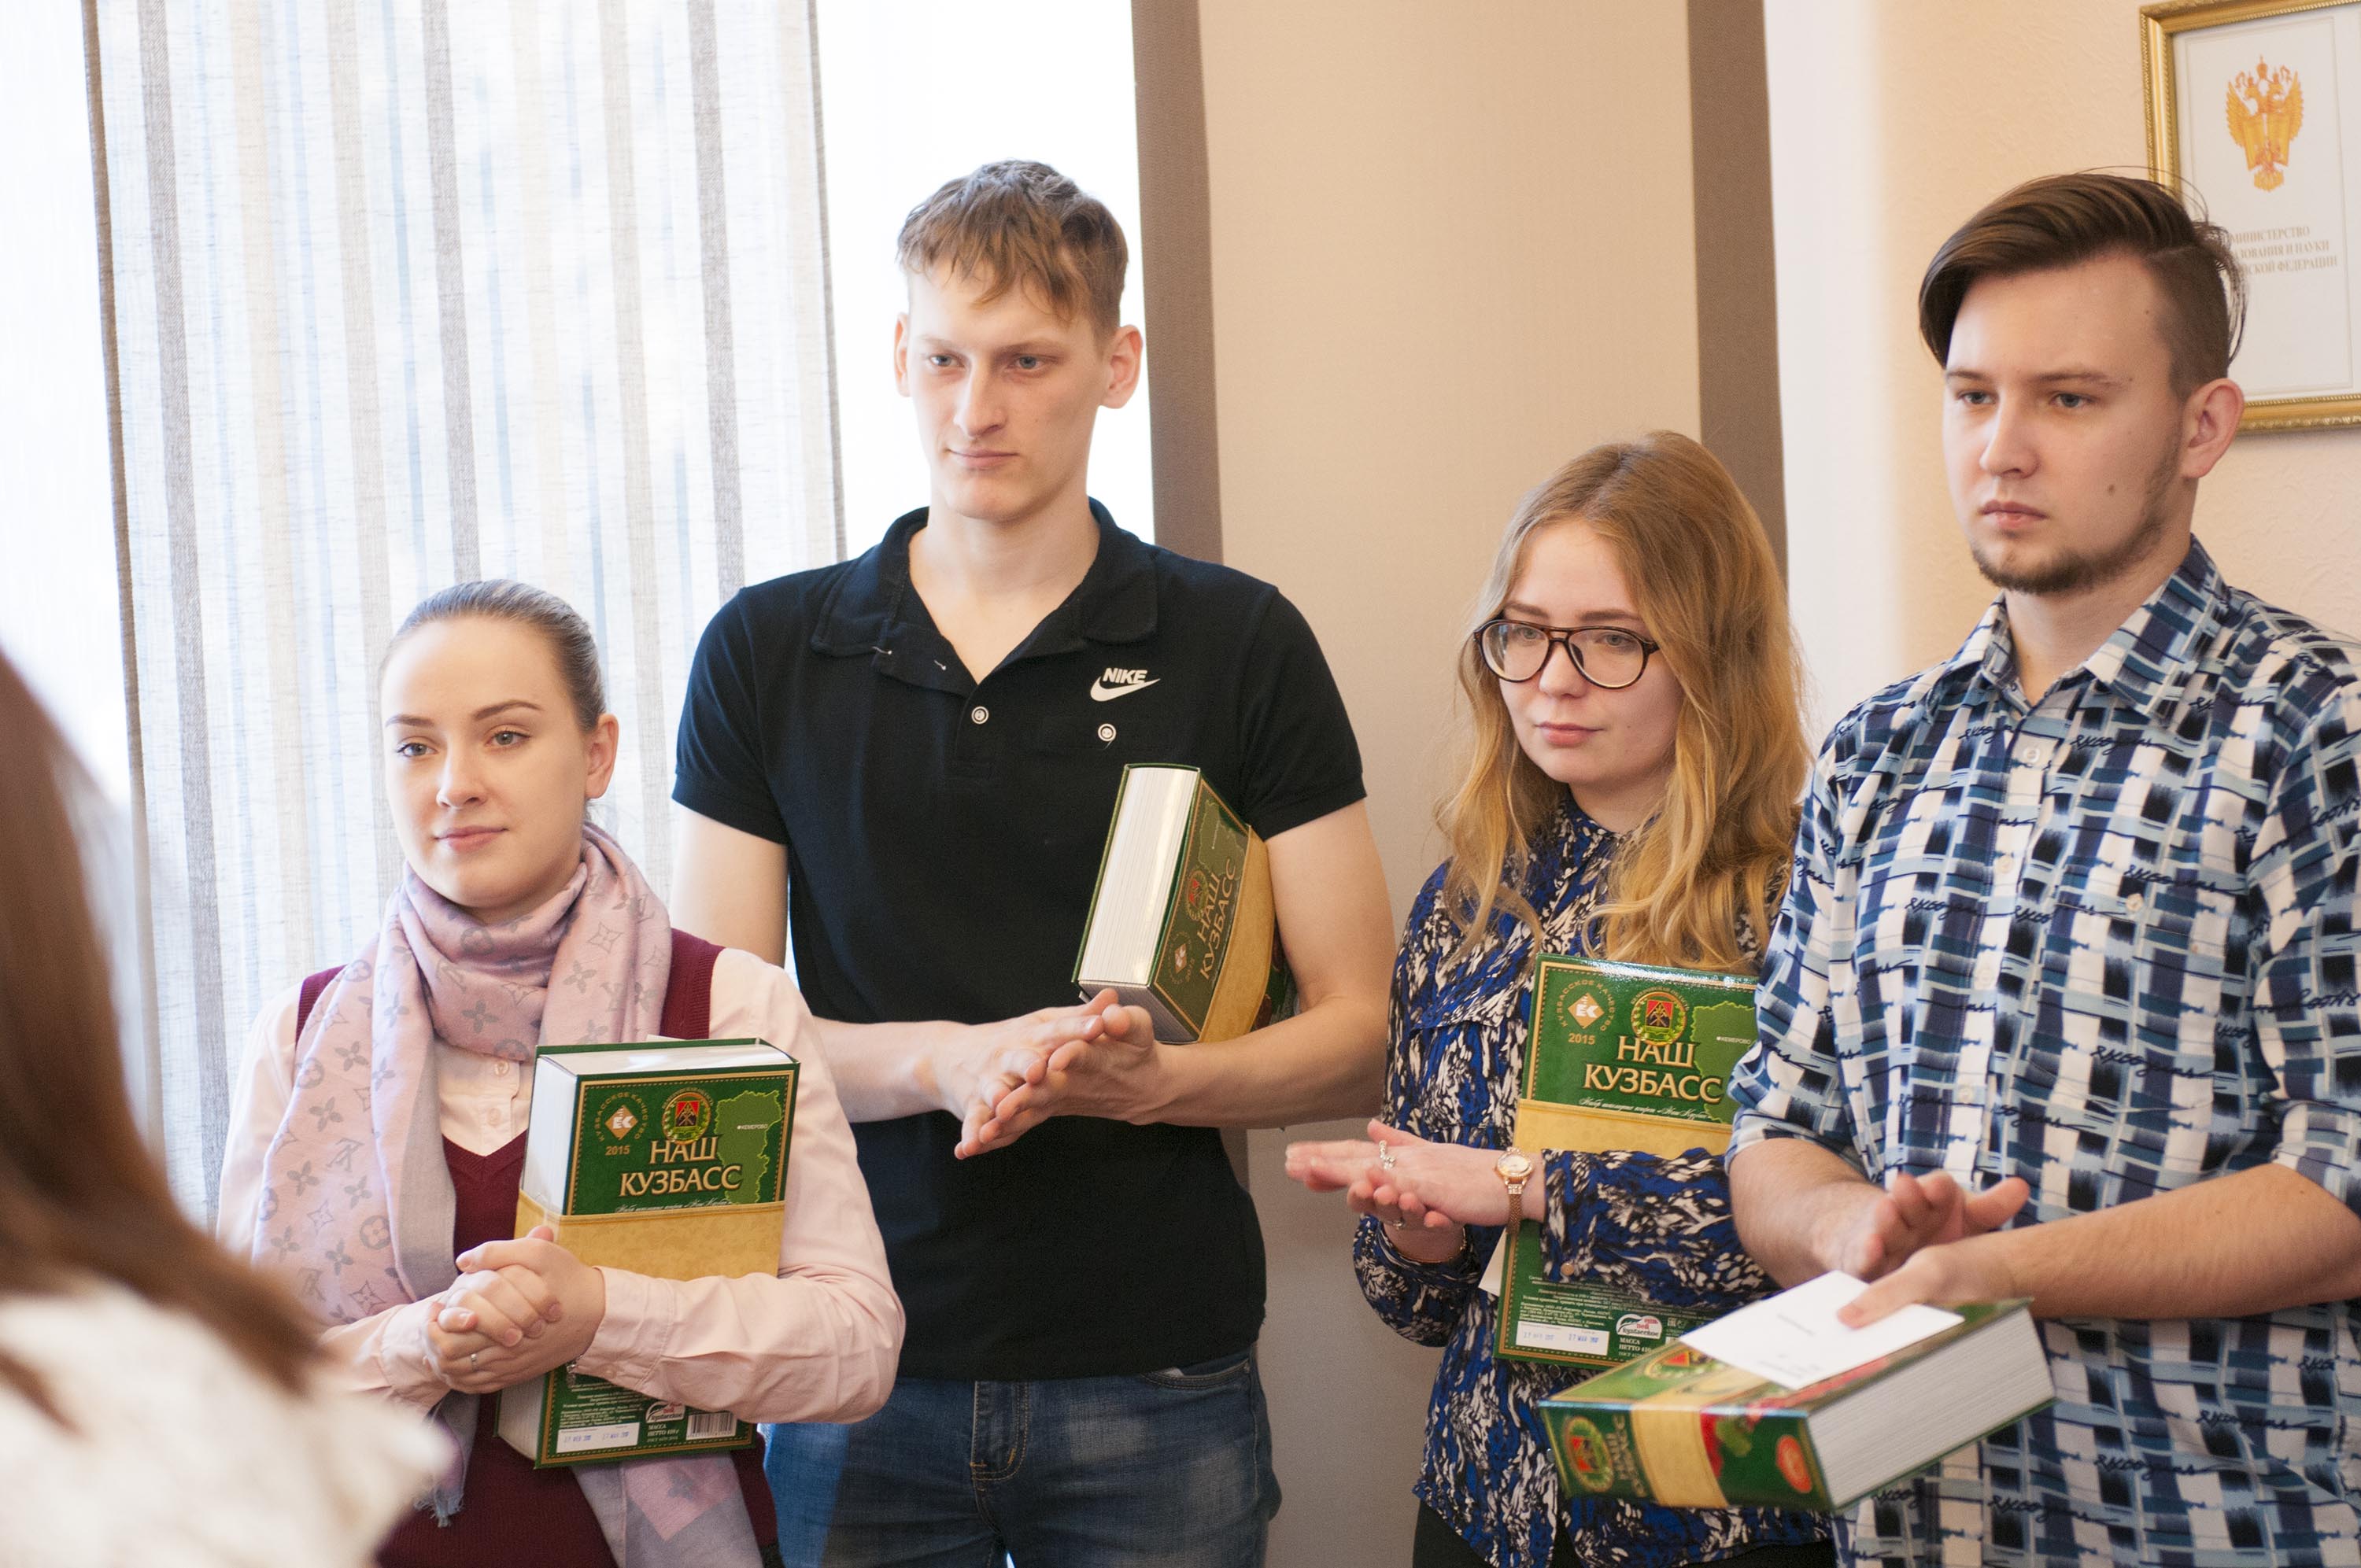 10 марта состоялось вручение компенсации части расходов по найму жилого помещения для студентов, обучающихся в образовательных организациях высшего образования Кемеровской области за февраль 2017 года